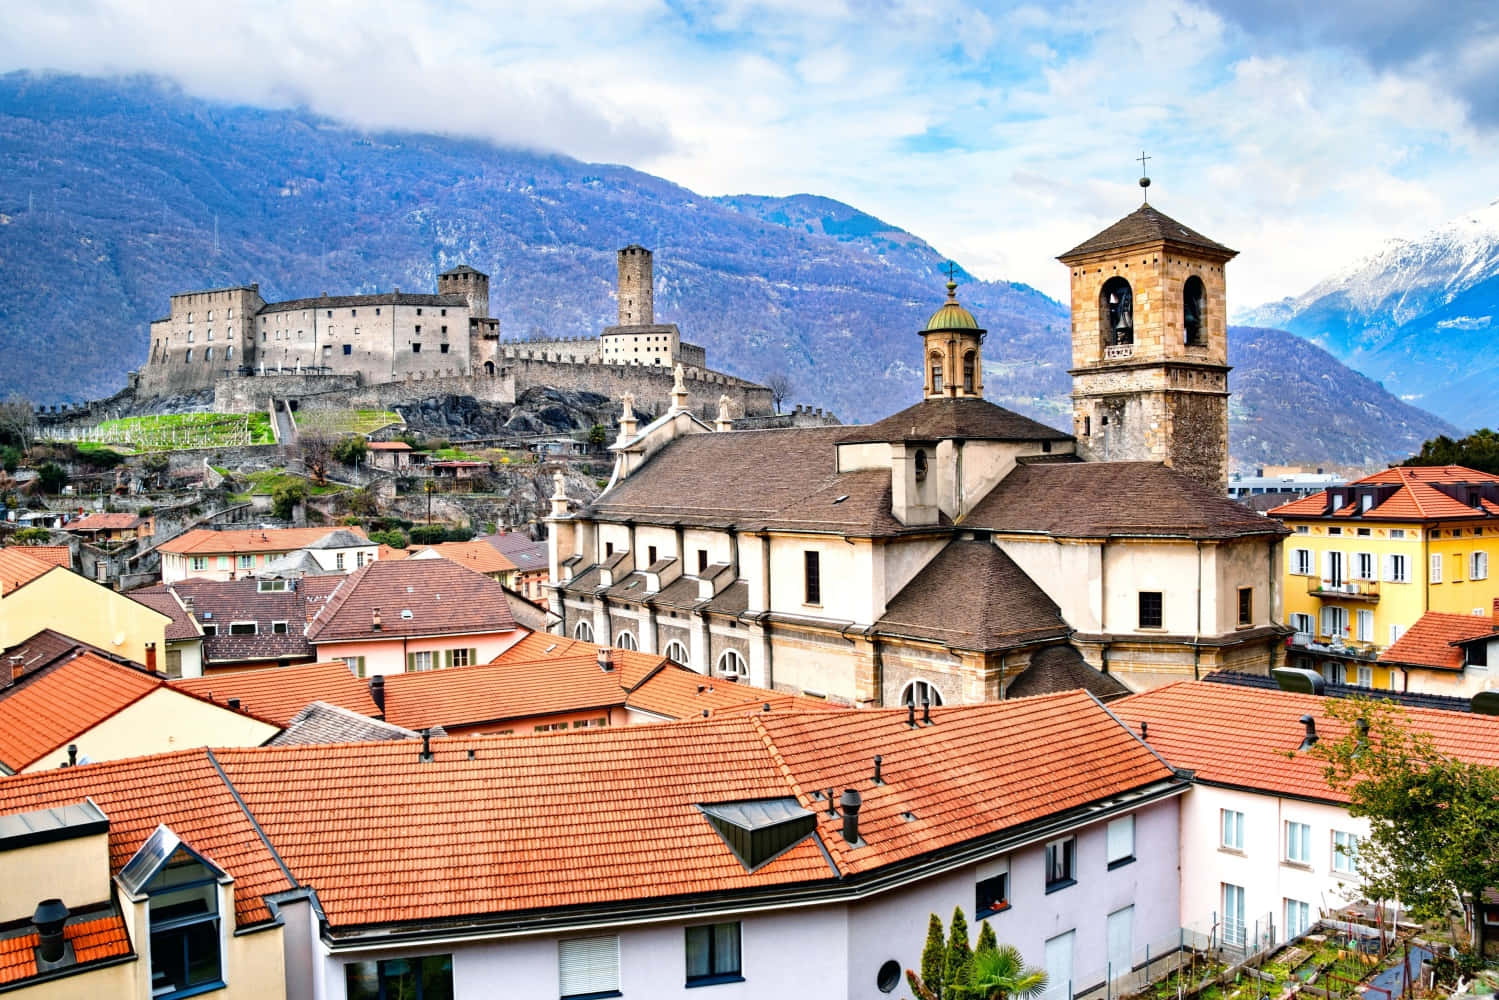 Scenic View Of Medieval Castles Of Bellinzona In Switzerland Wallpaper